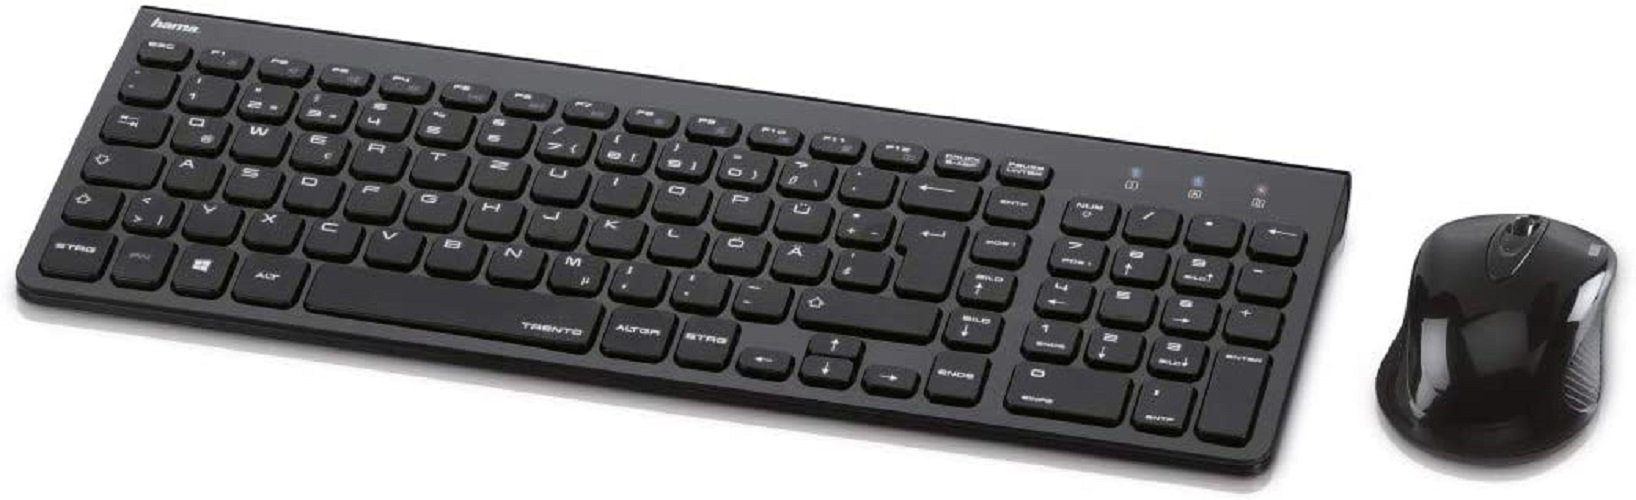 Hama Hama Funk-Tastatur mit Maus Set kabellos (leise Computer-Tastatur mit  flachen Tasten, Ziffernblock, deutsches QWERTZ Layout, optische Funk-Maus,  1200 dpi, 8m Reichweite) schwarz Tastatur